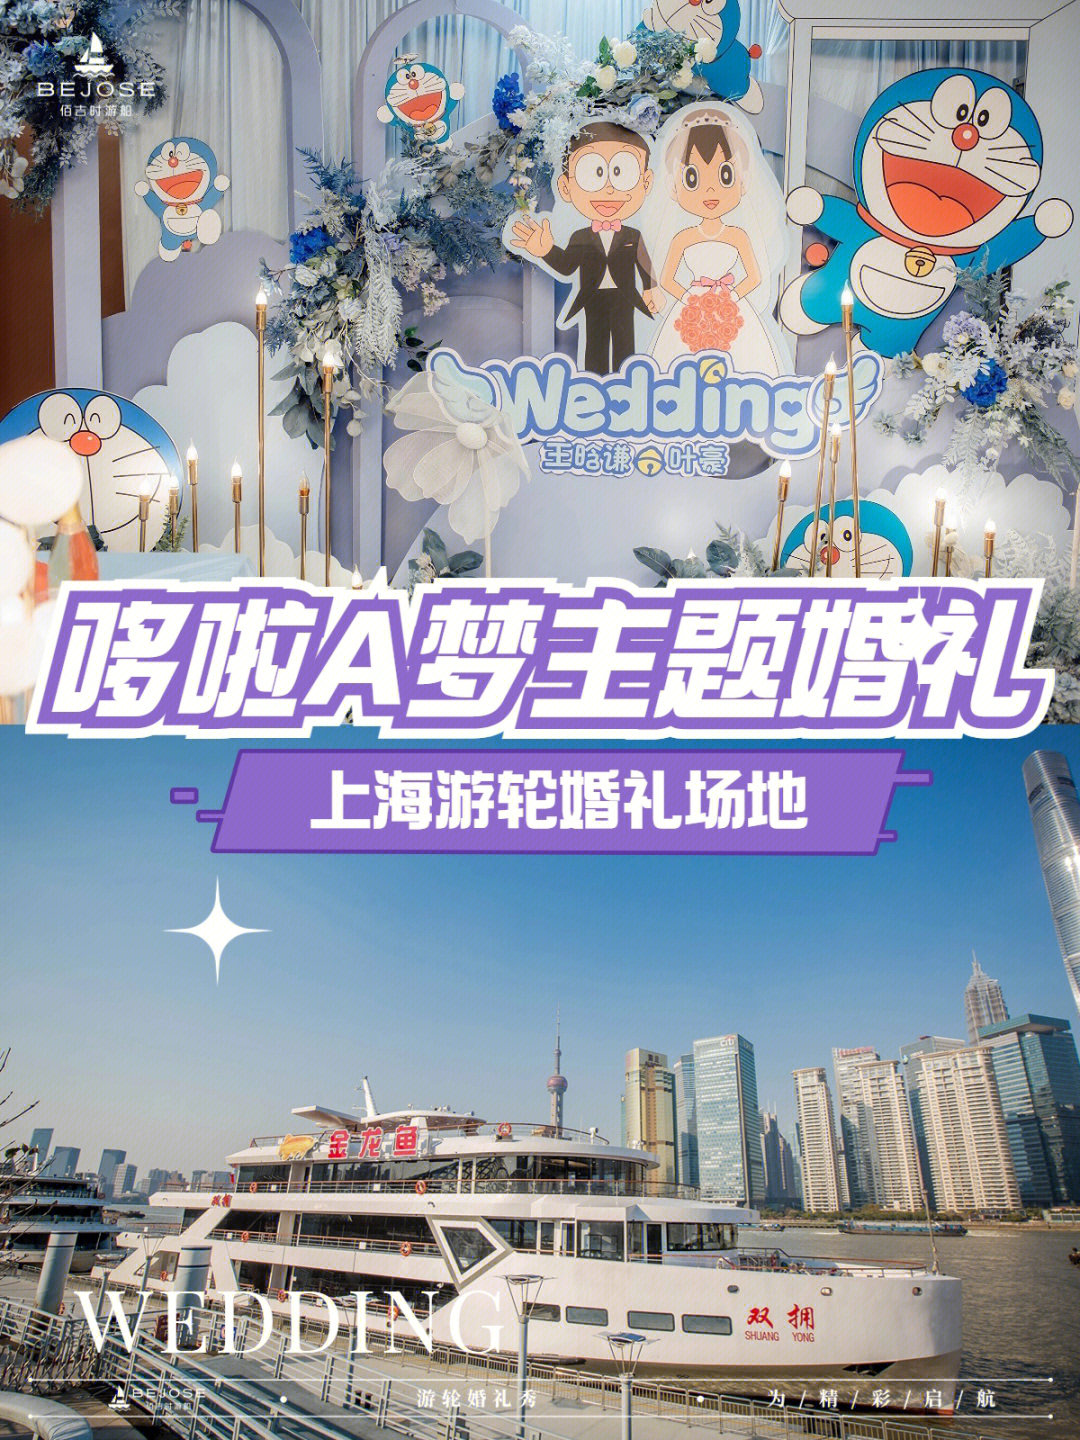 黄浦江游轮婚礼费用图片